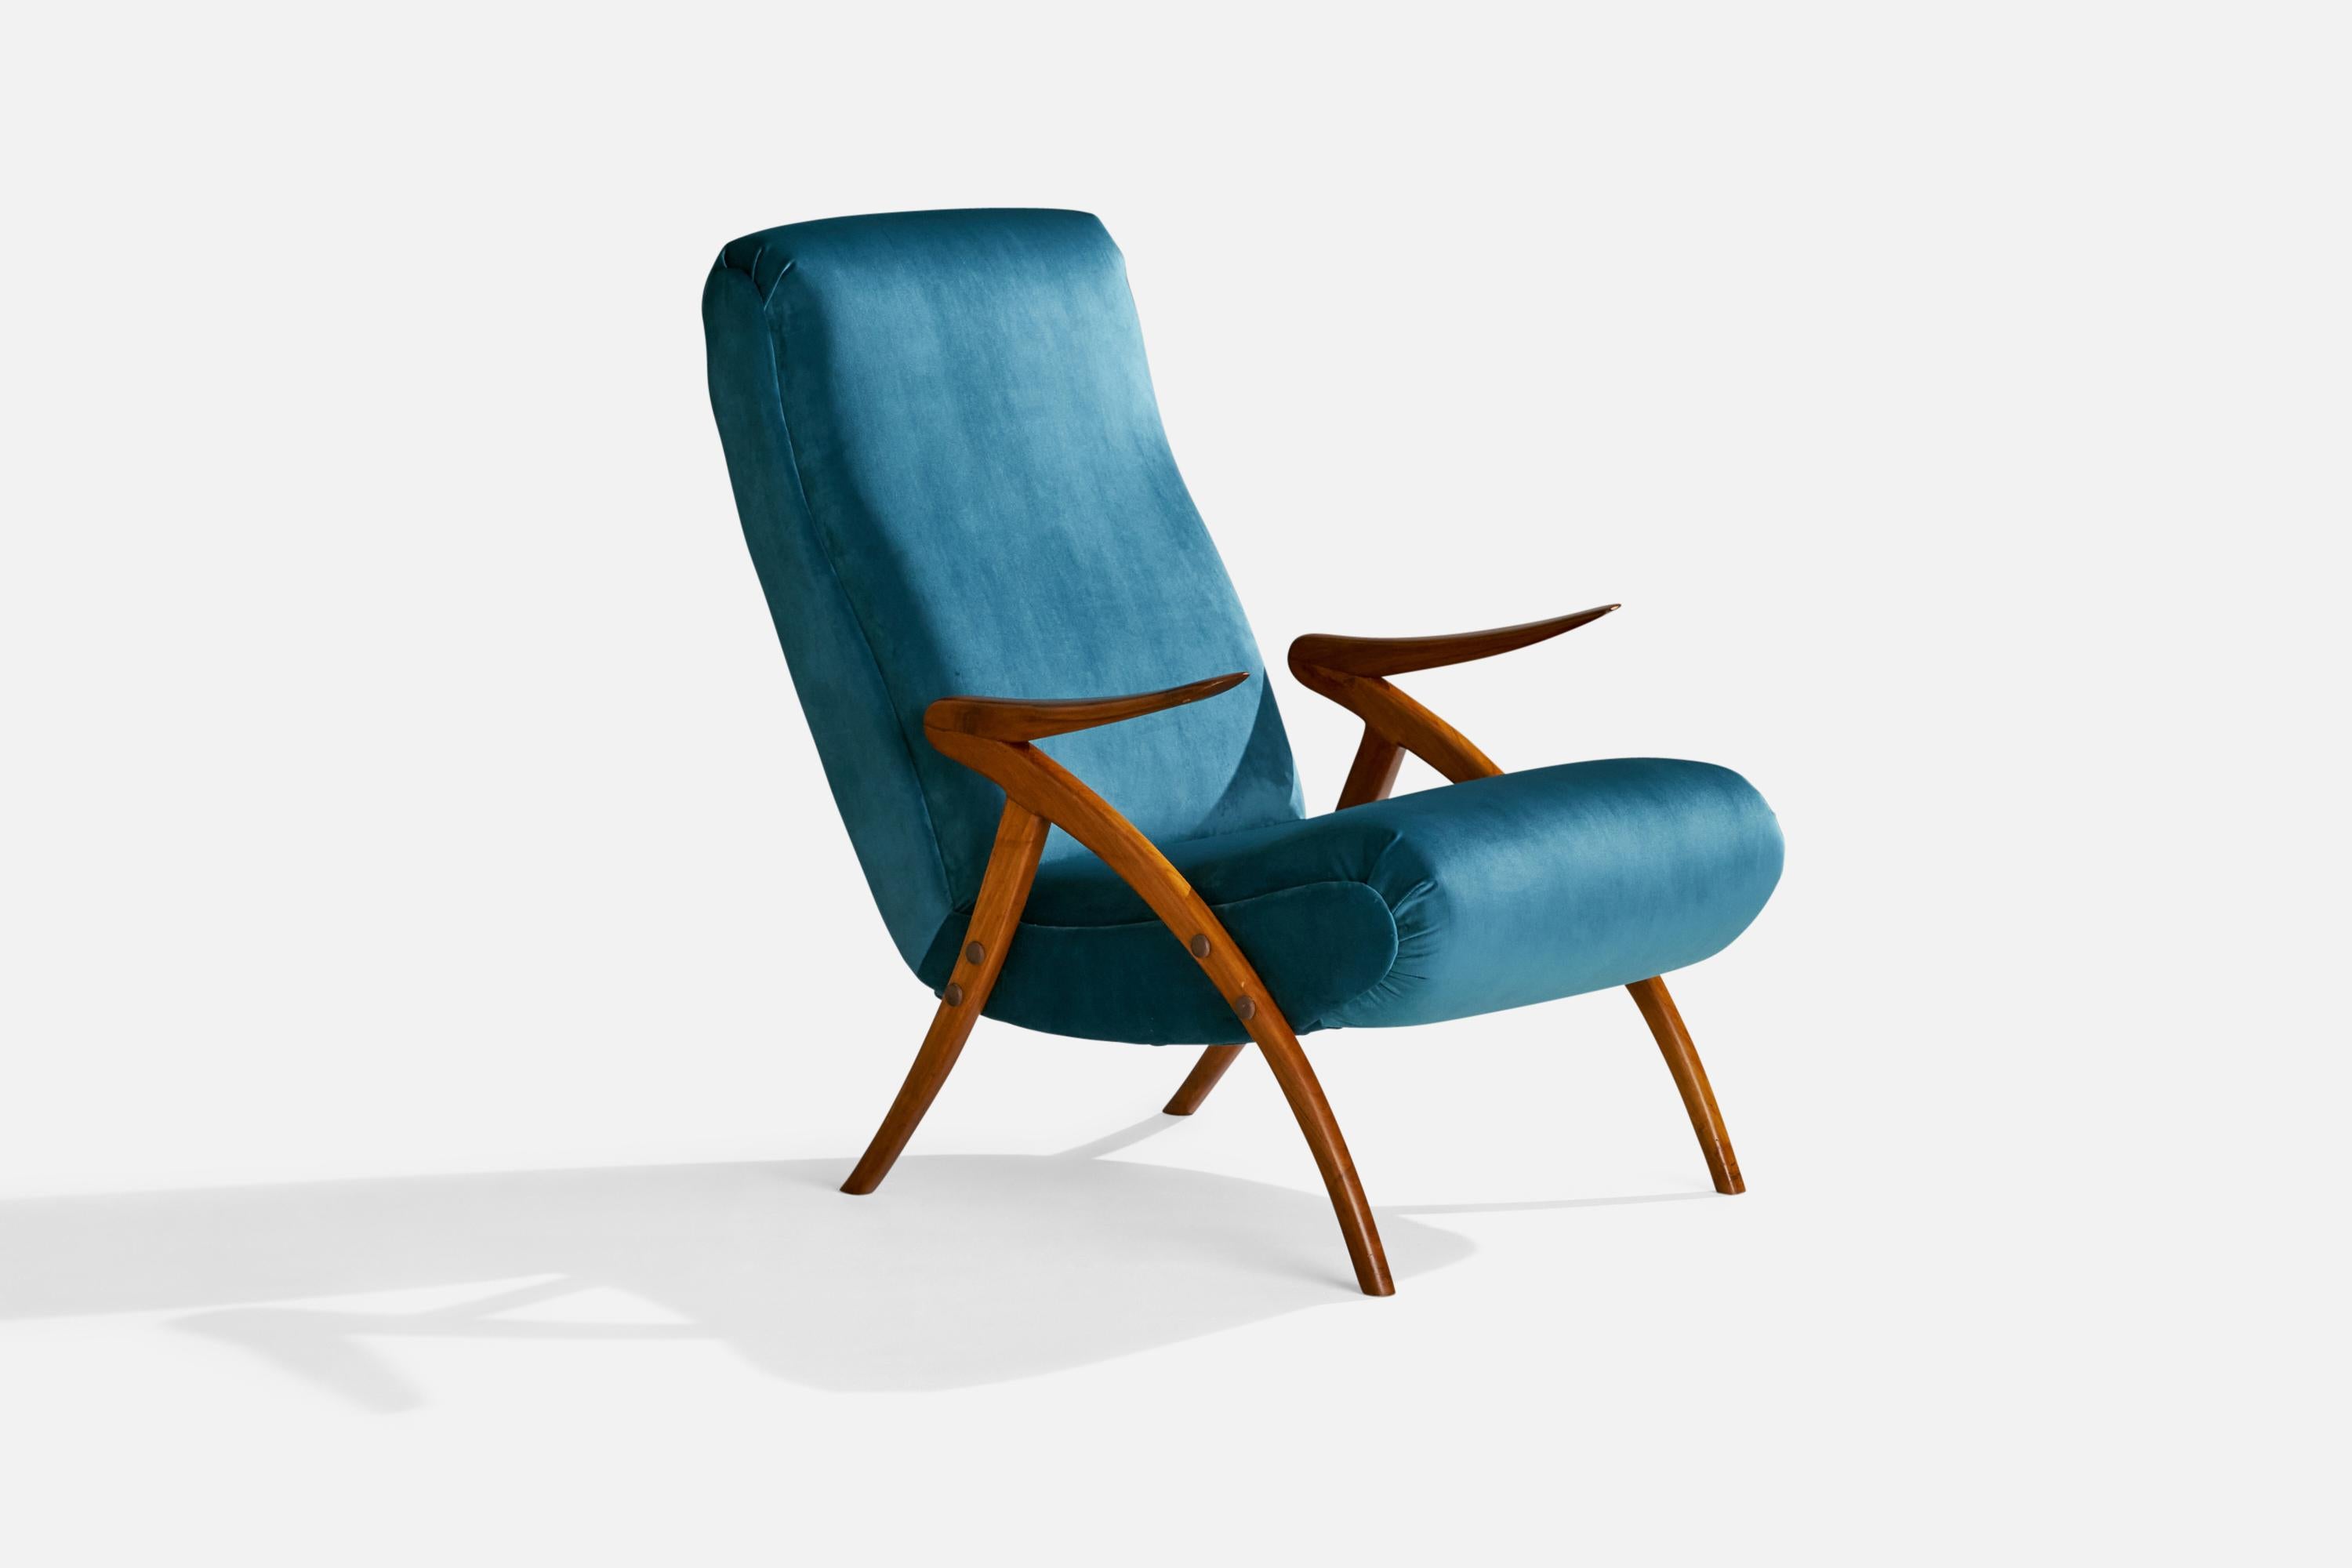 Loungesessel aus blauem Samt und Nussbaumholz, entworfen und hergestellt in Italien, 1950er Jahre.
Reparatur an einer Armlehne.

Sitzhöhe 17